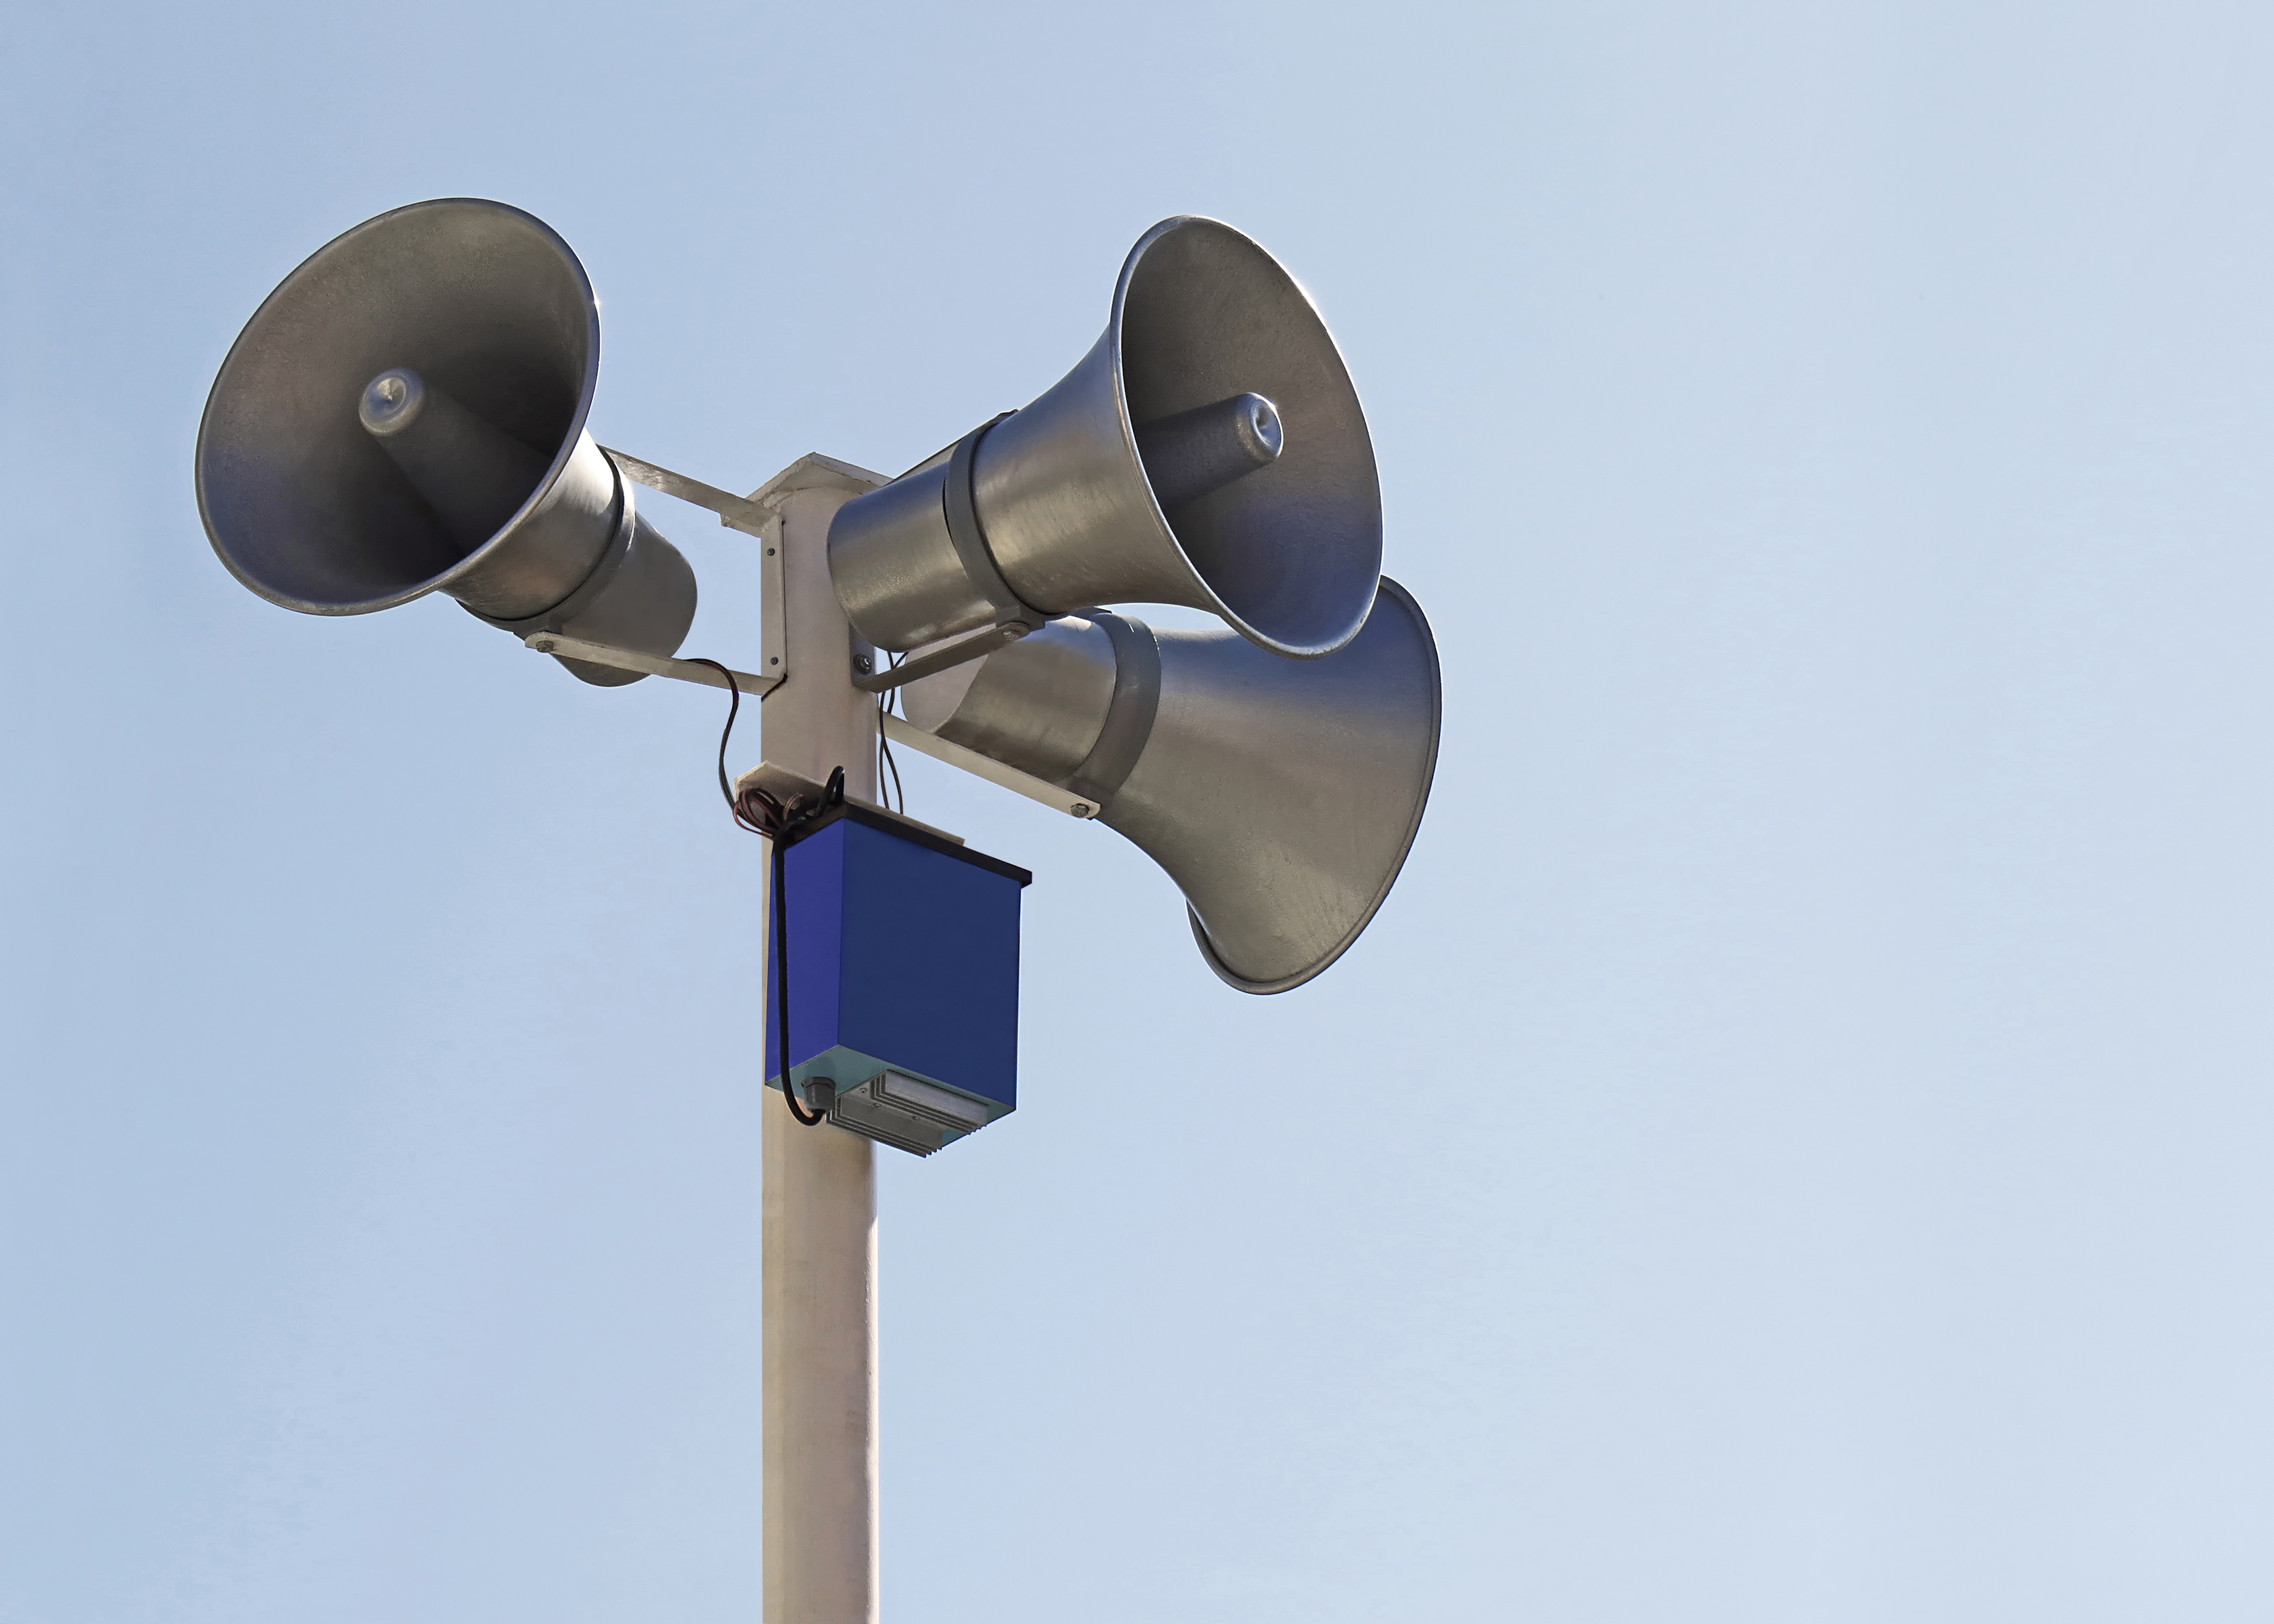     [VIDÉO]Risques naturels : quatre communes testent leurs sirènes d'alerte

